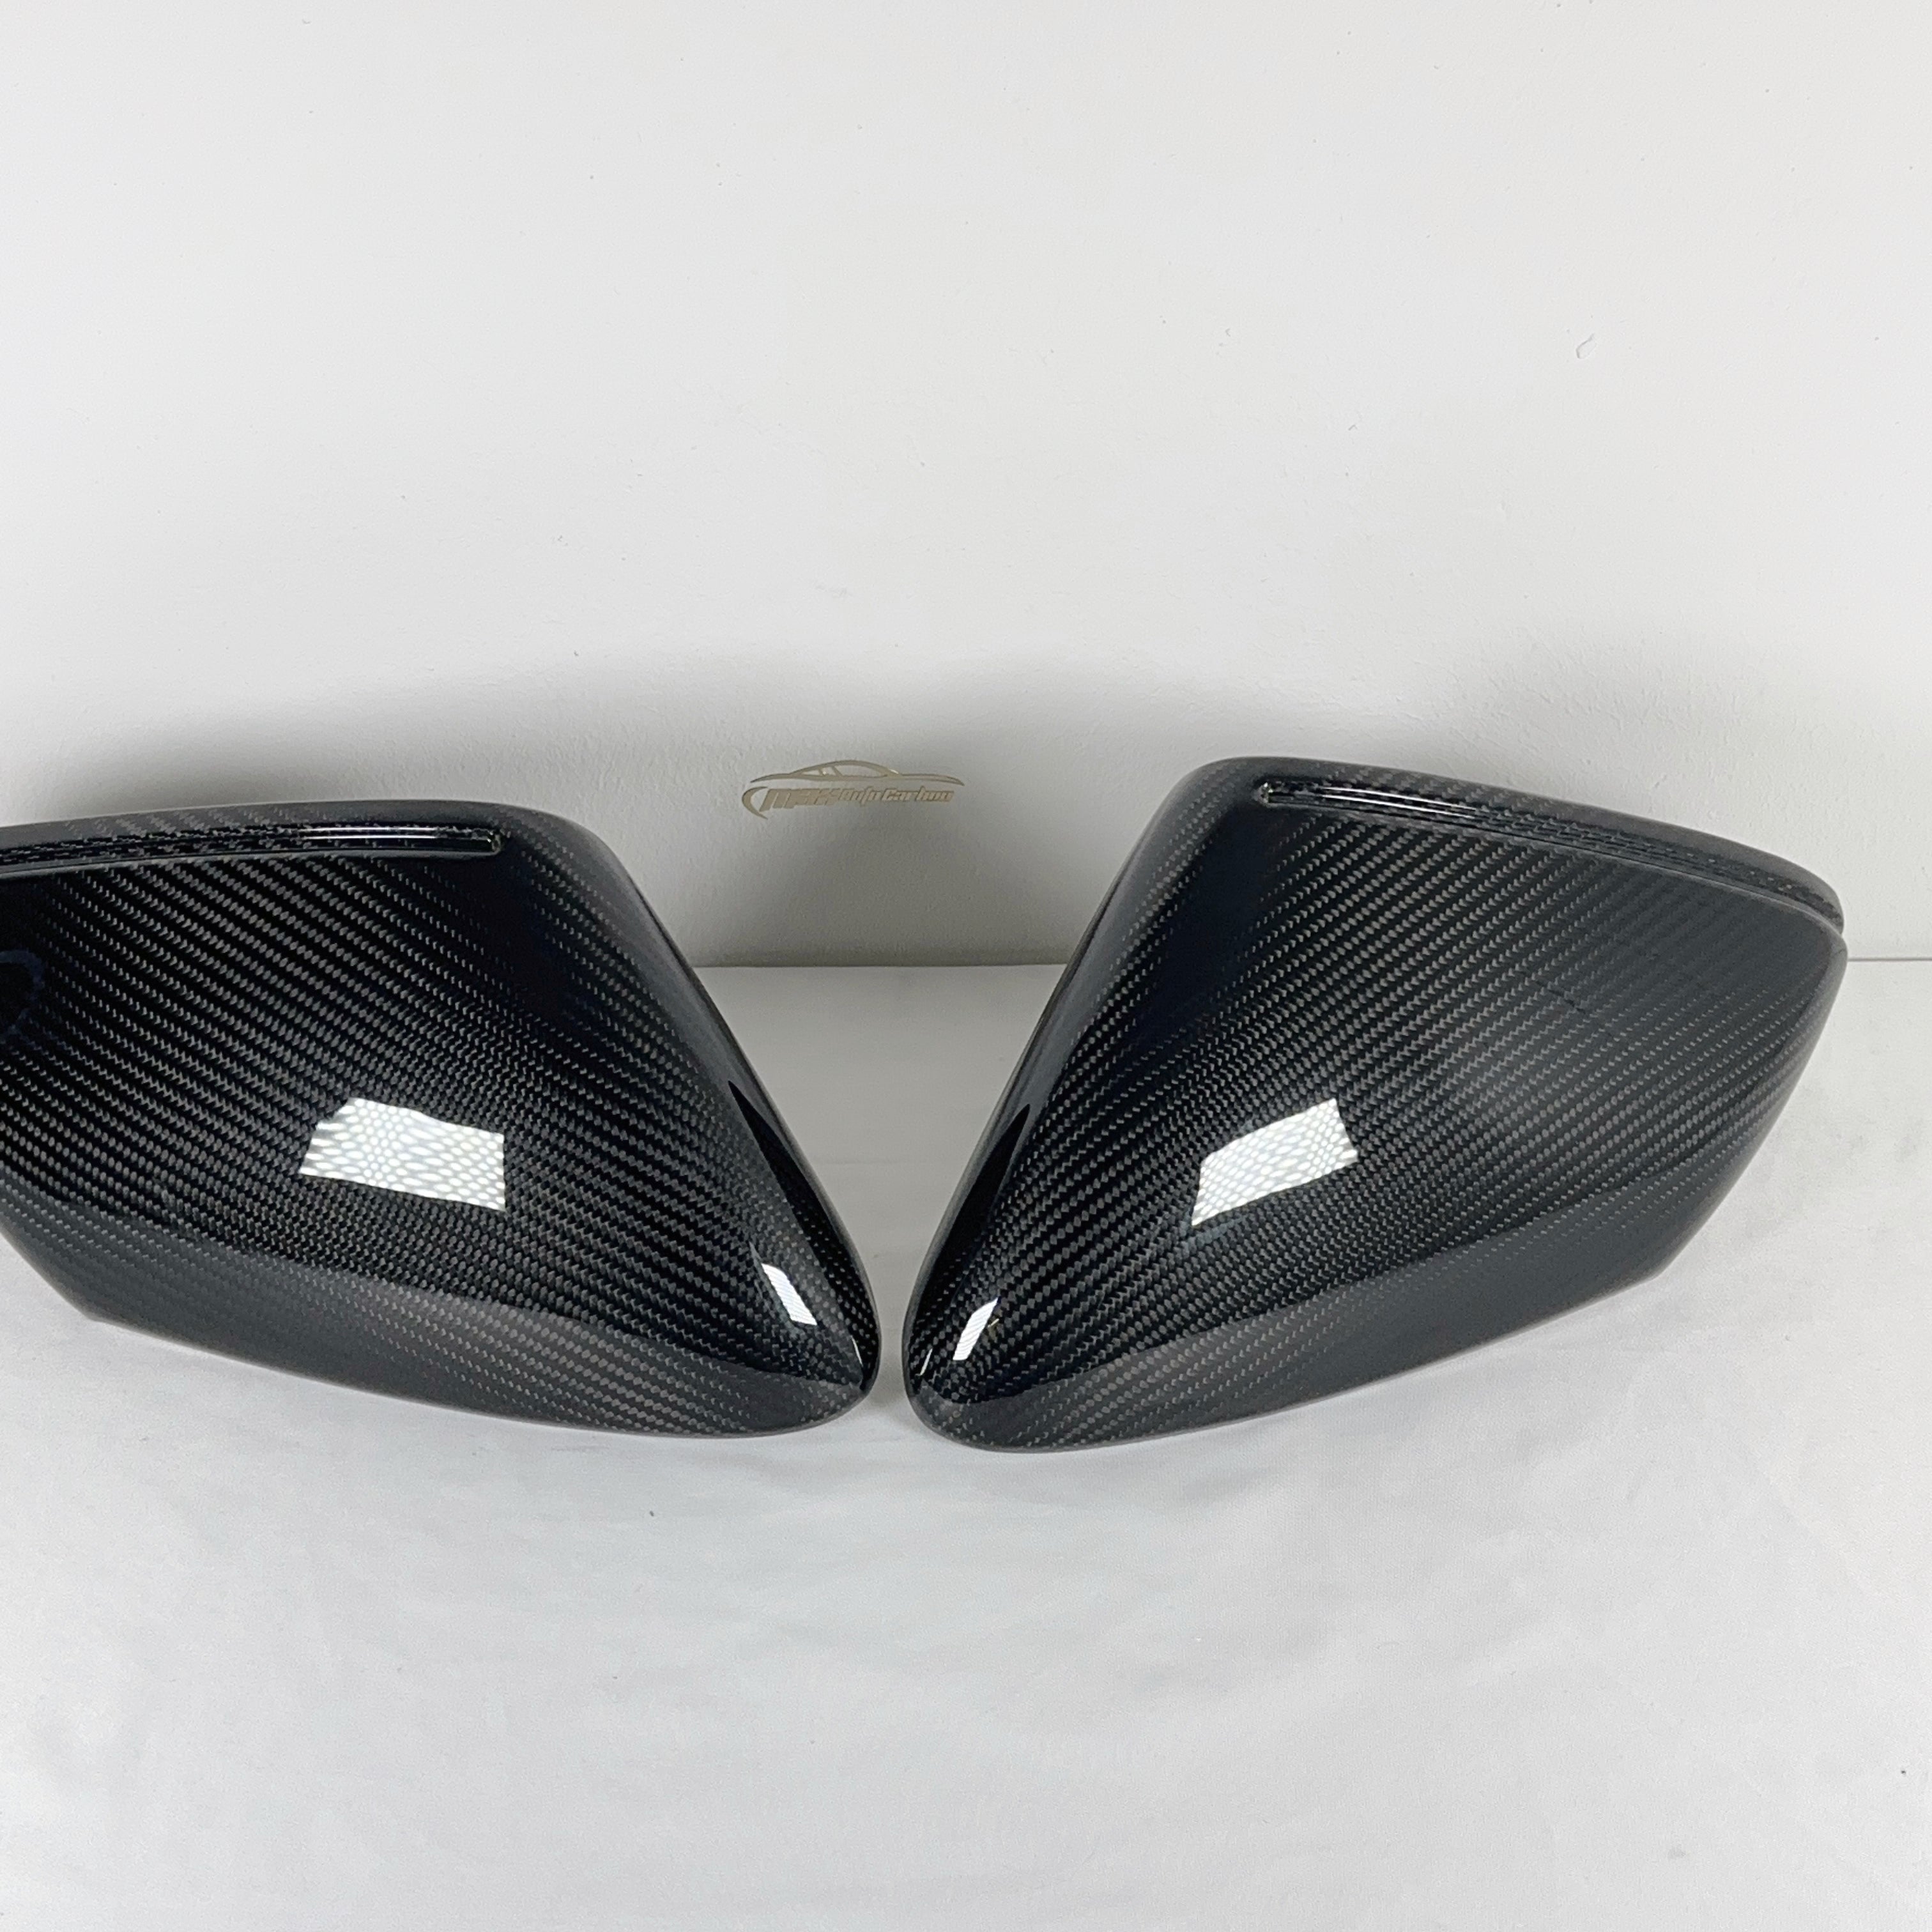 MAX CARBON Performance echt dry Carbon Karbon Ersatz mirror Caps Spiegelkappen für Porsche 911 992 Taycan